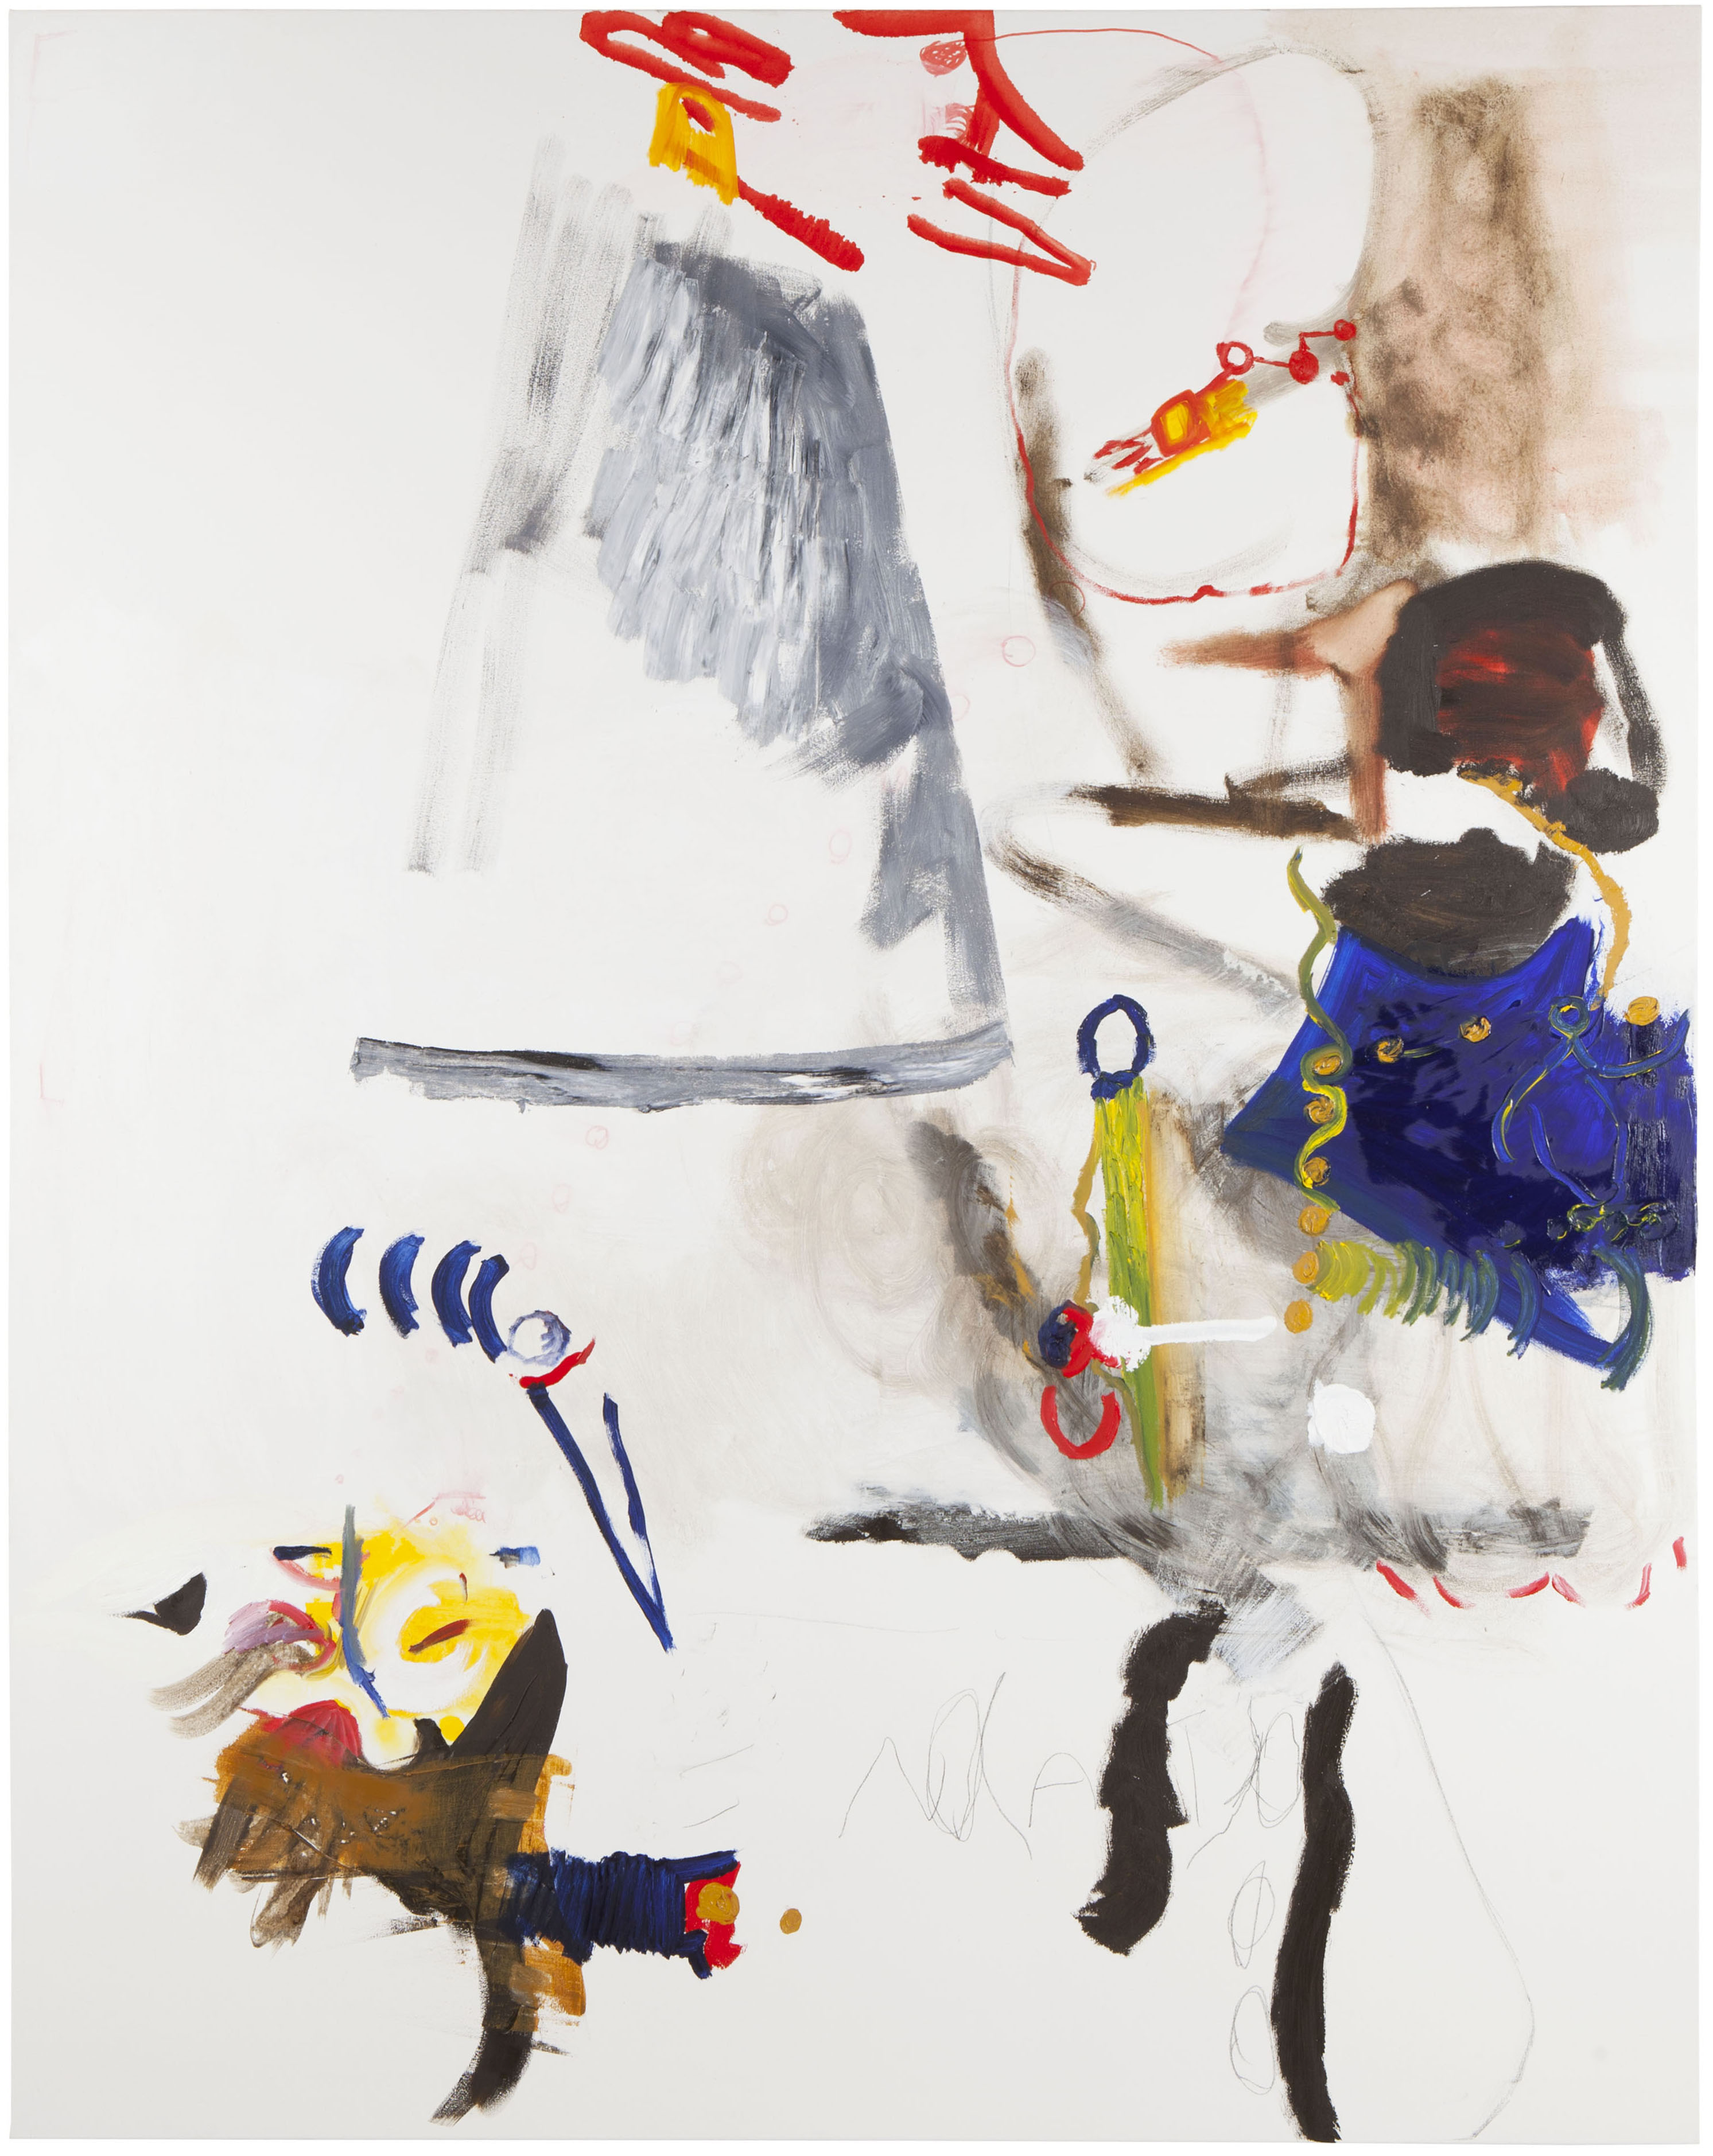 Abb.: Renato Settembre, Fremdgehen, Öl, Acryl, Bleistift und Permanentmarker auf Nessel, 200 x 160 cm